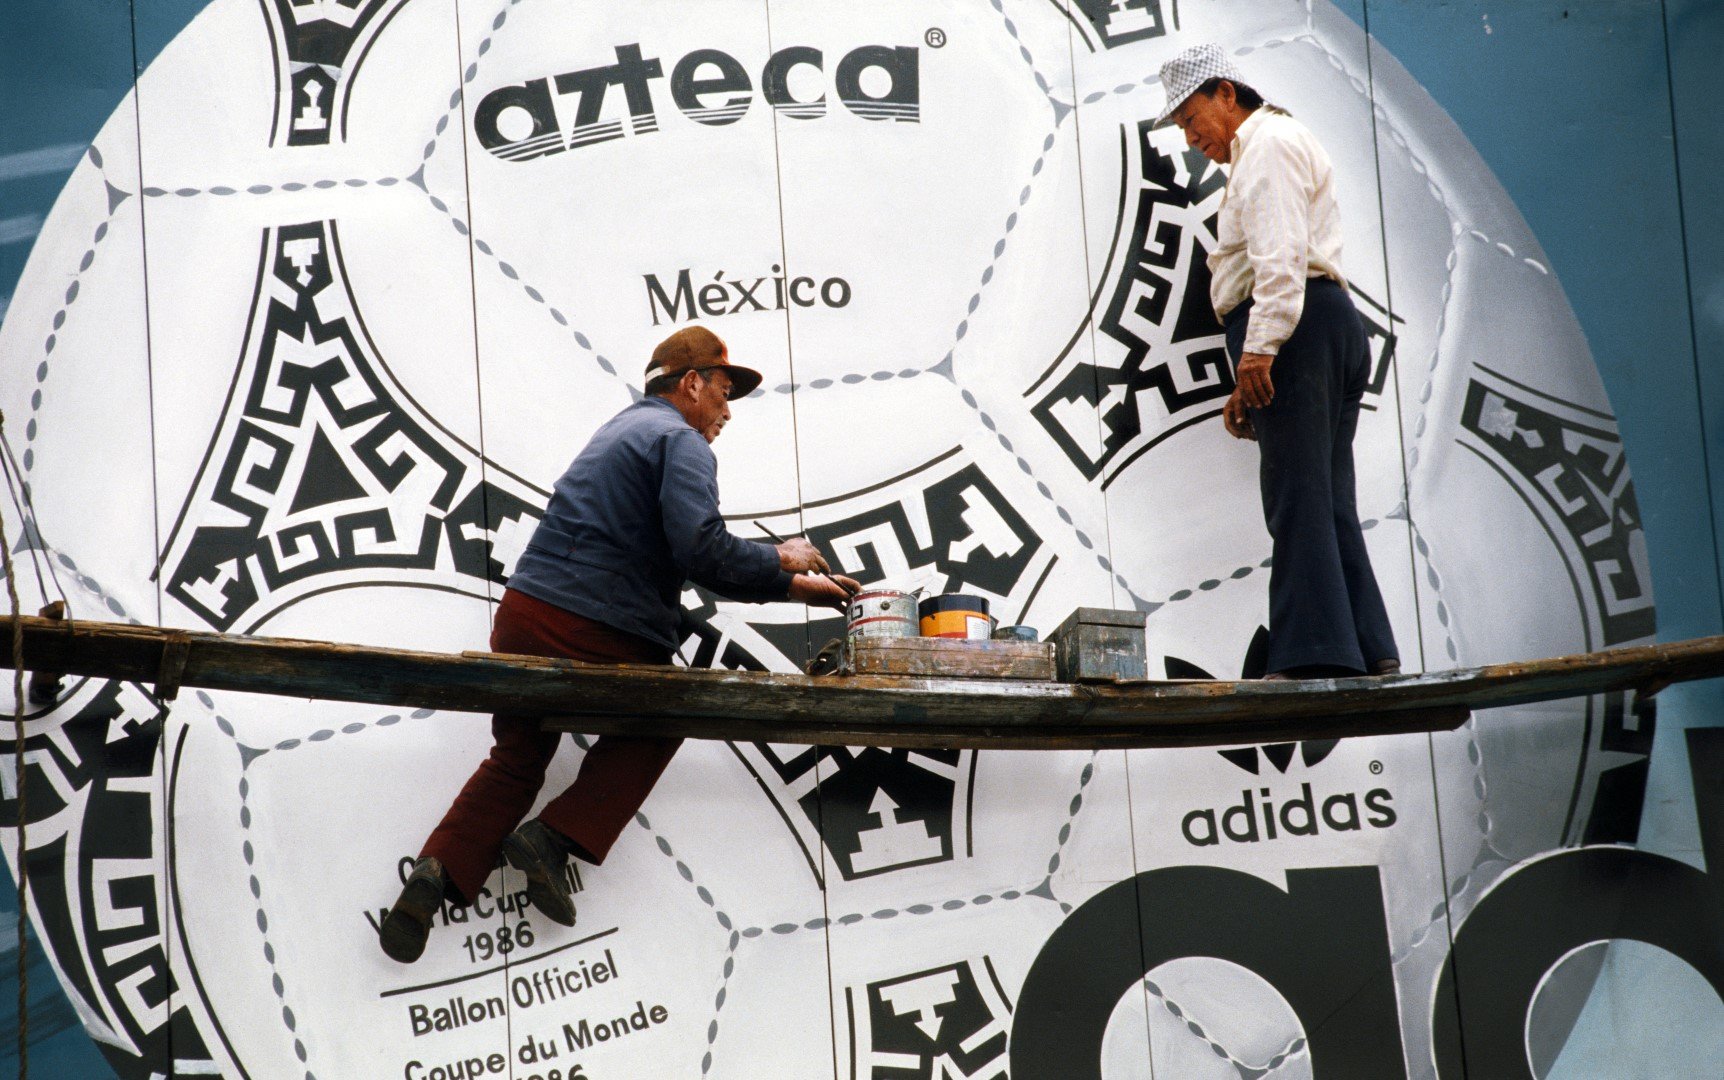 Мексико 1986 - вероятно най-яркият Мондиал на индивидуализма. Един човек стана шампион